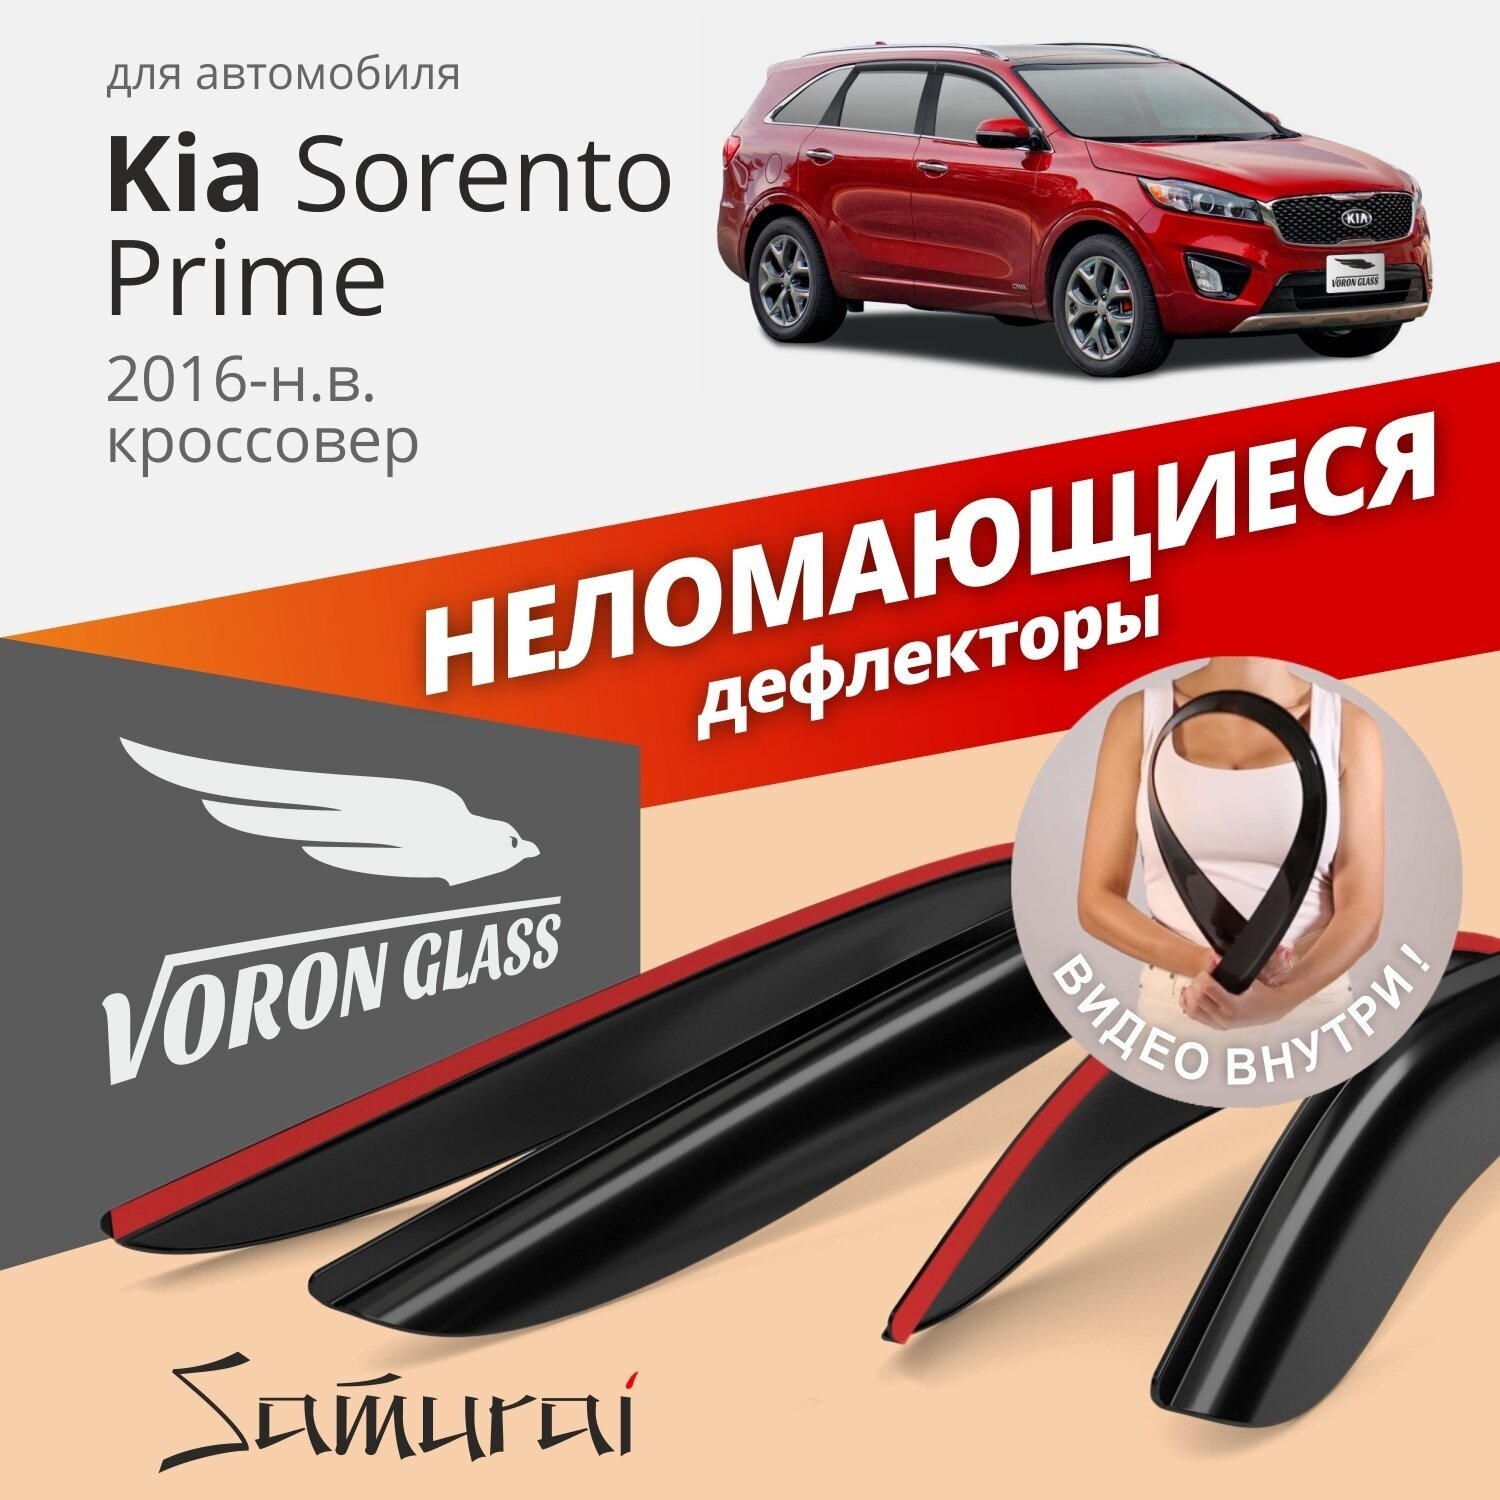 Дефлекторы окон неломающиеся Voron Glass серия Samurai для Kia Sorento Prime 2016-н. в.